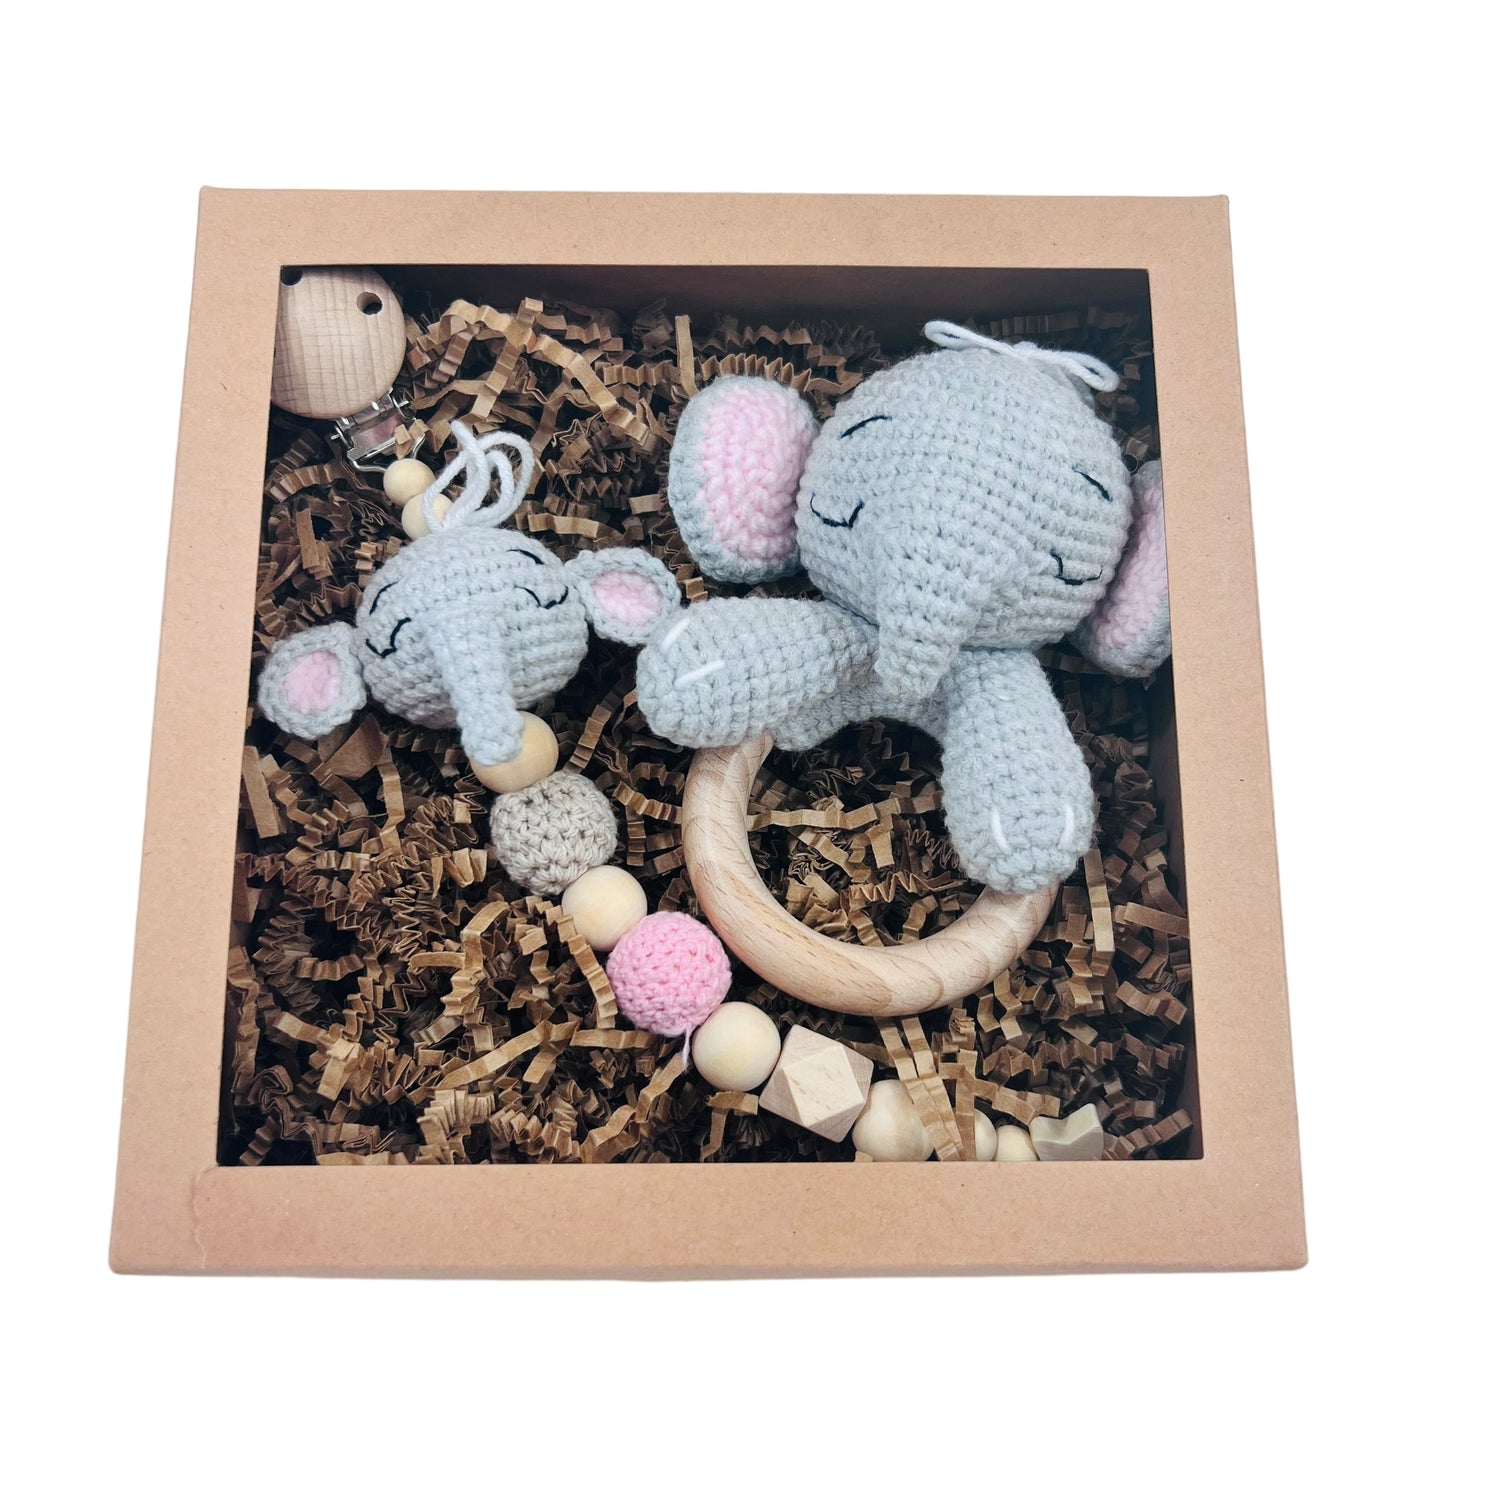 Baby Gift Set - Elephant